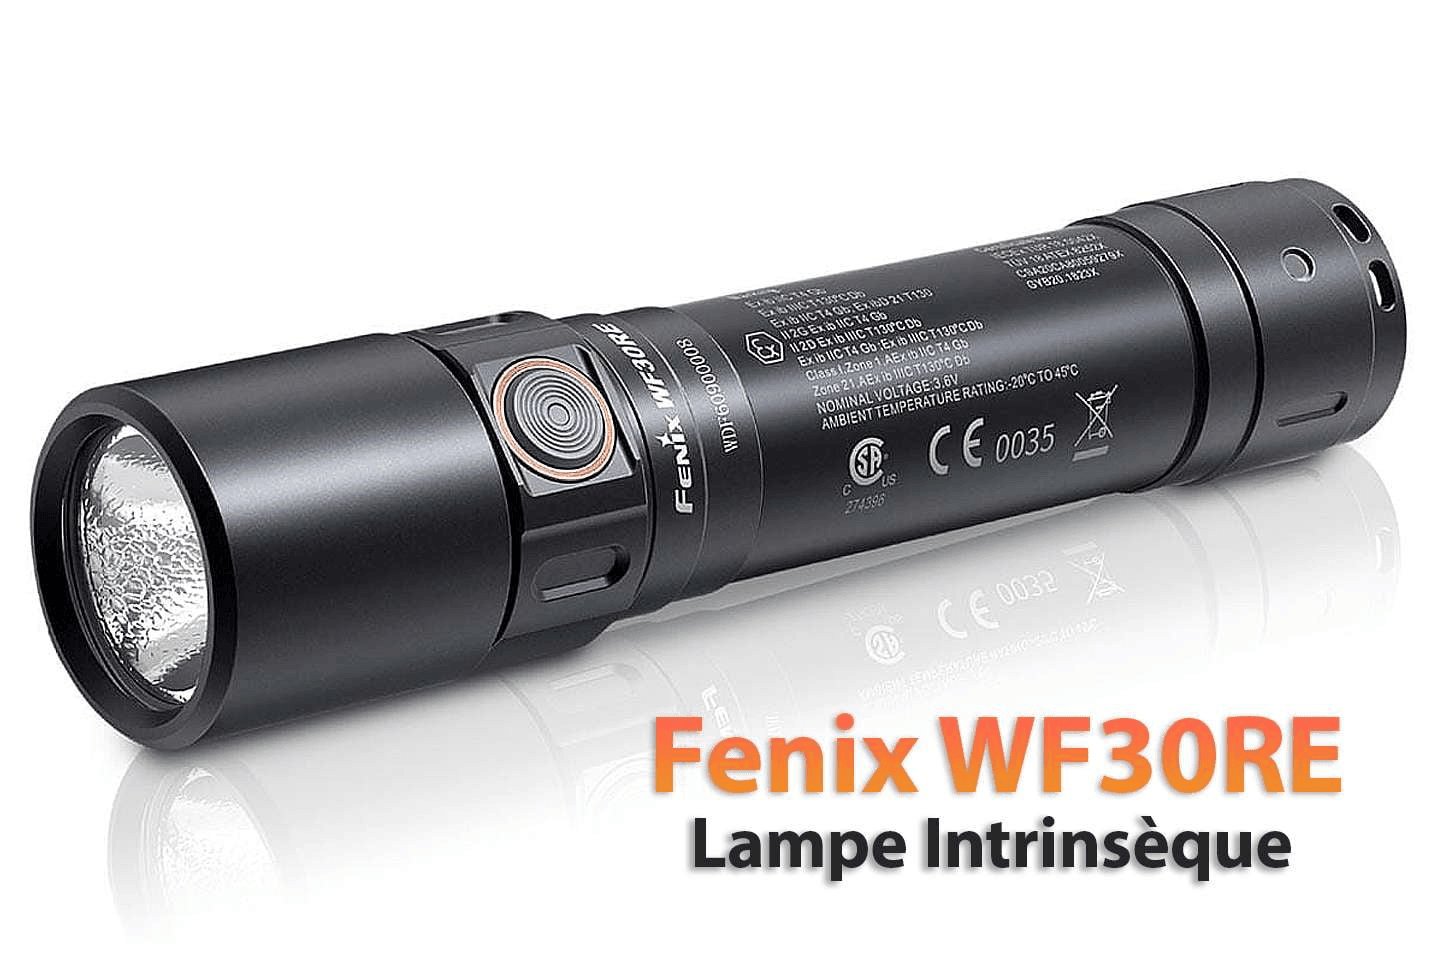 Fenix WF30RE lampe torche à sécurité intrinsèque – Revendeur Officiel Lampes  FENIX depuis 2008